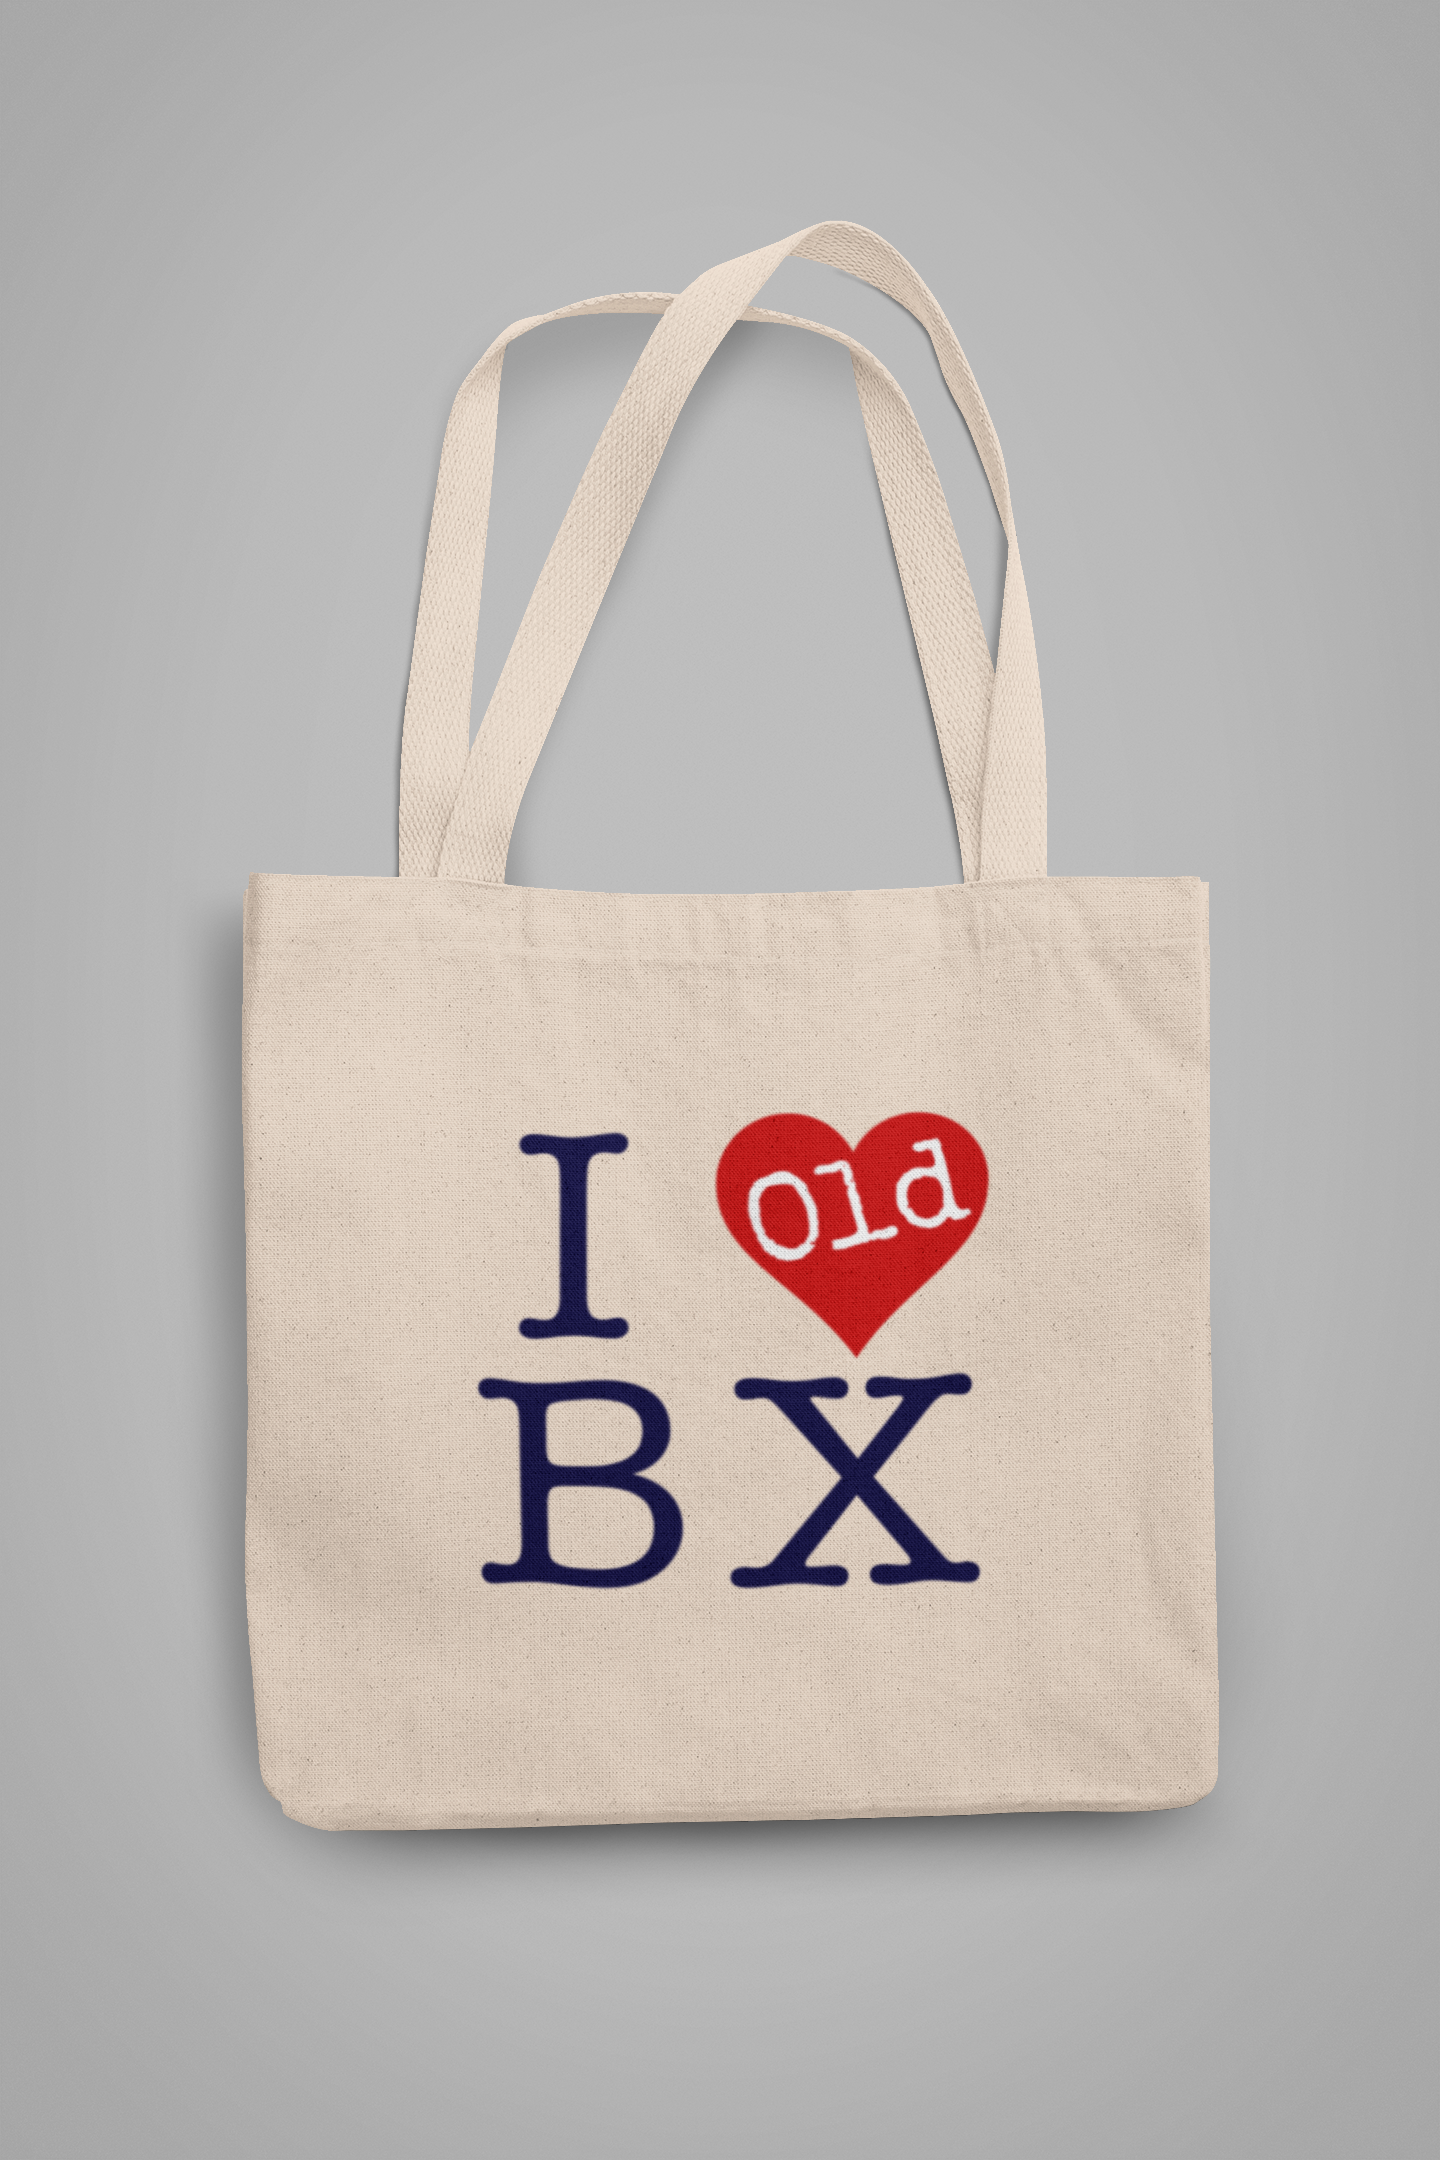 I Heart Old BRONX Tote Bag